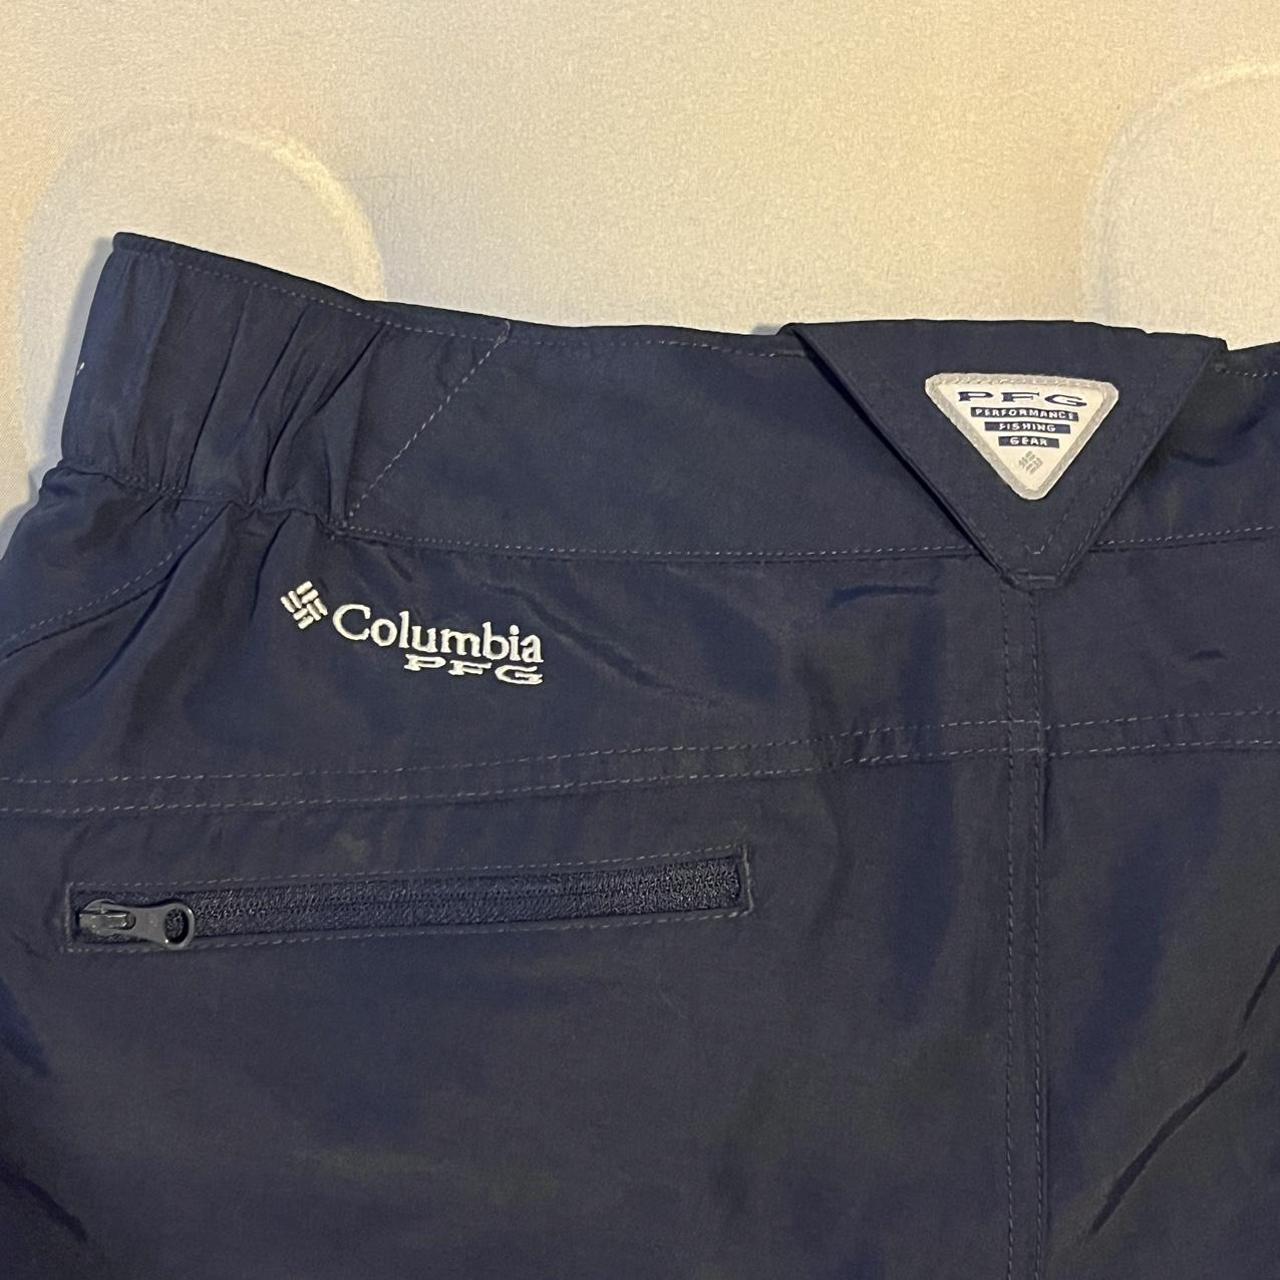 Columbia Women's professional fishing gear shorts - Depop